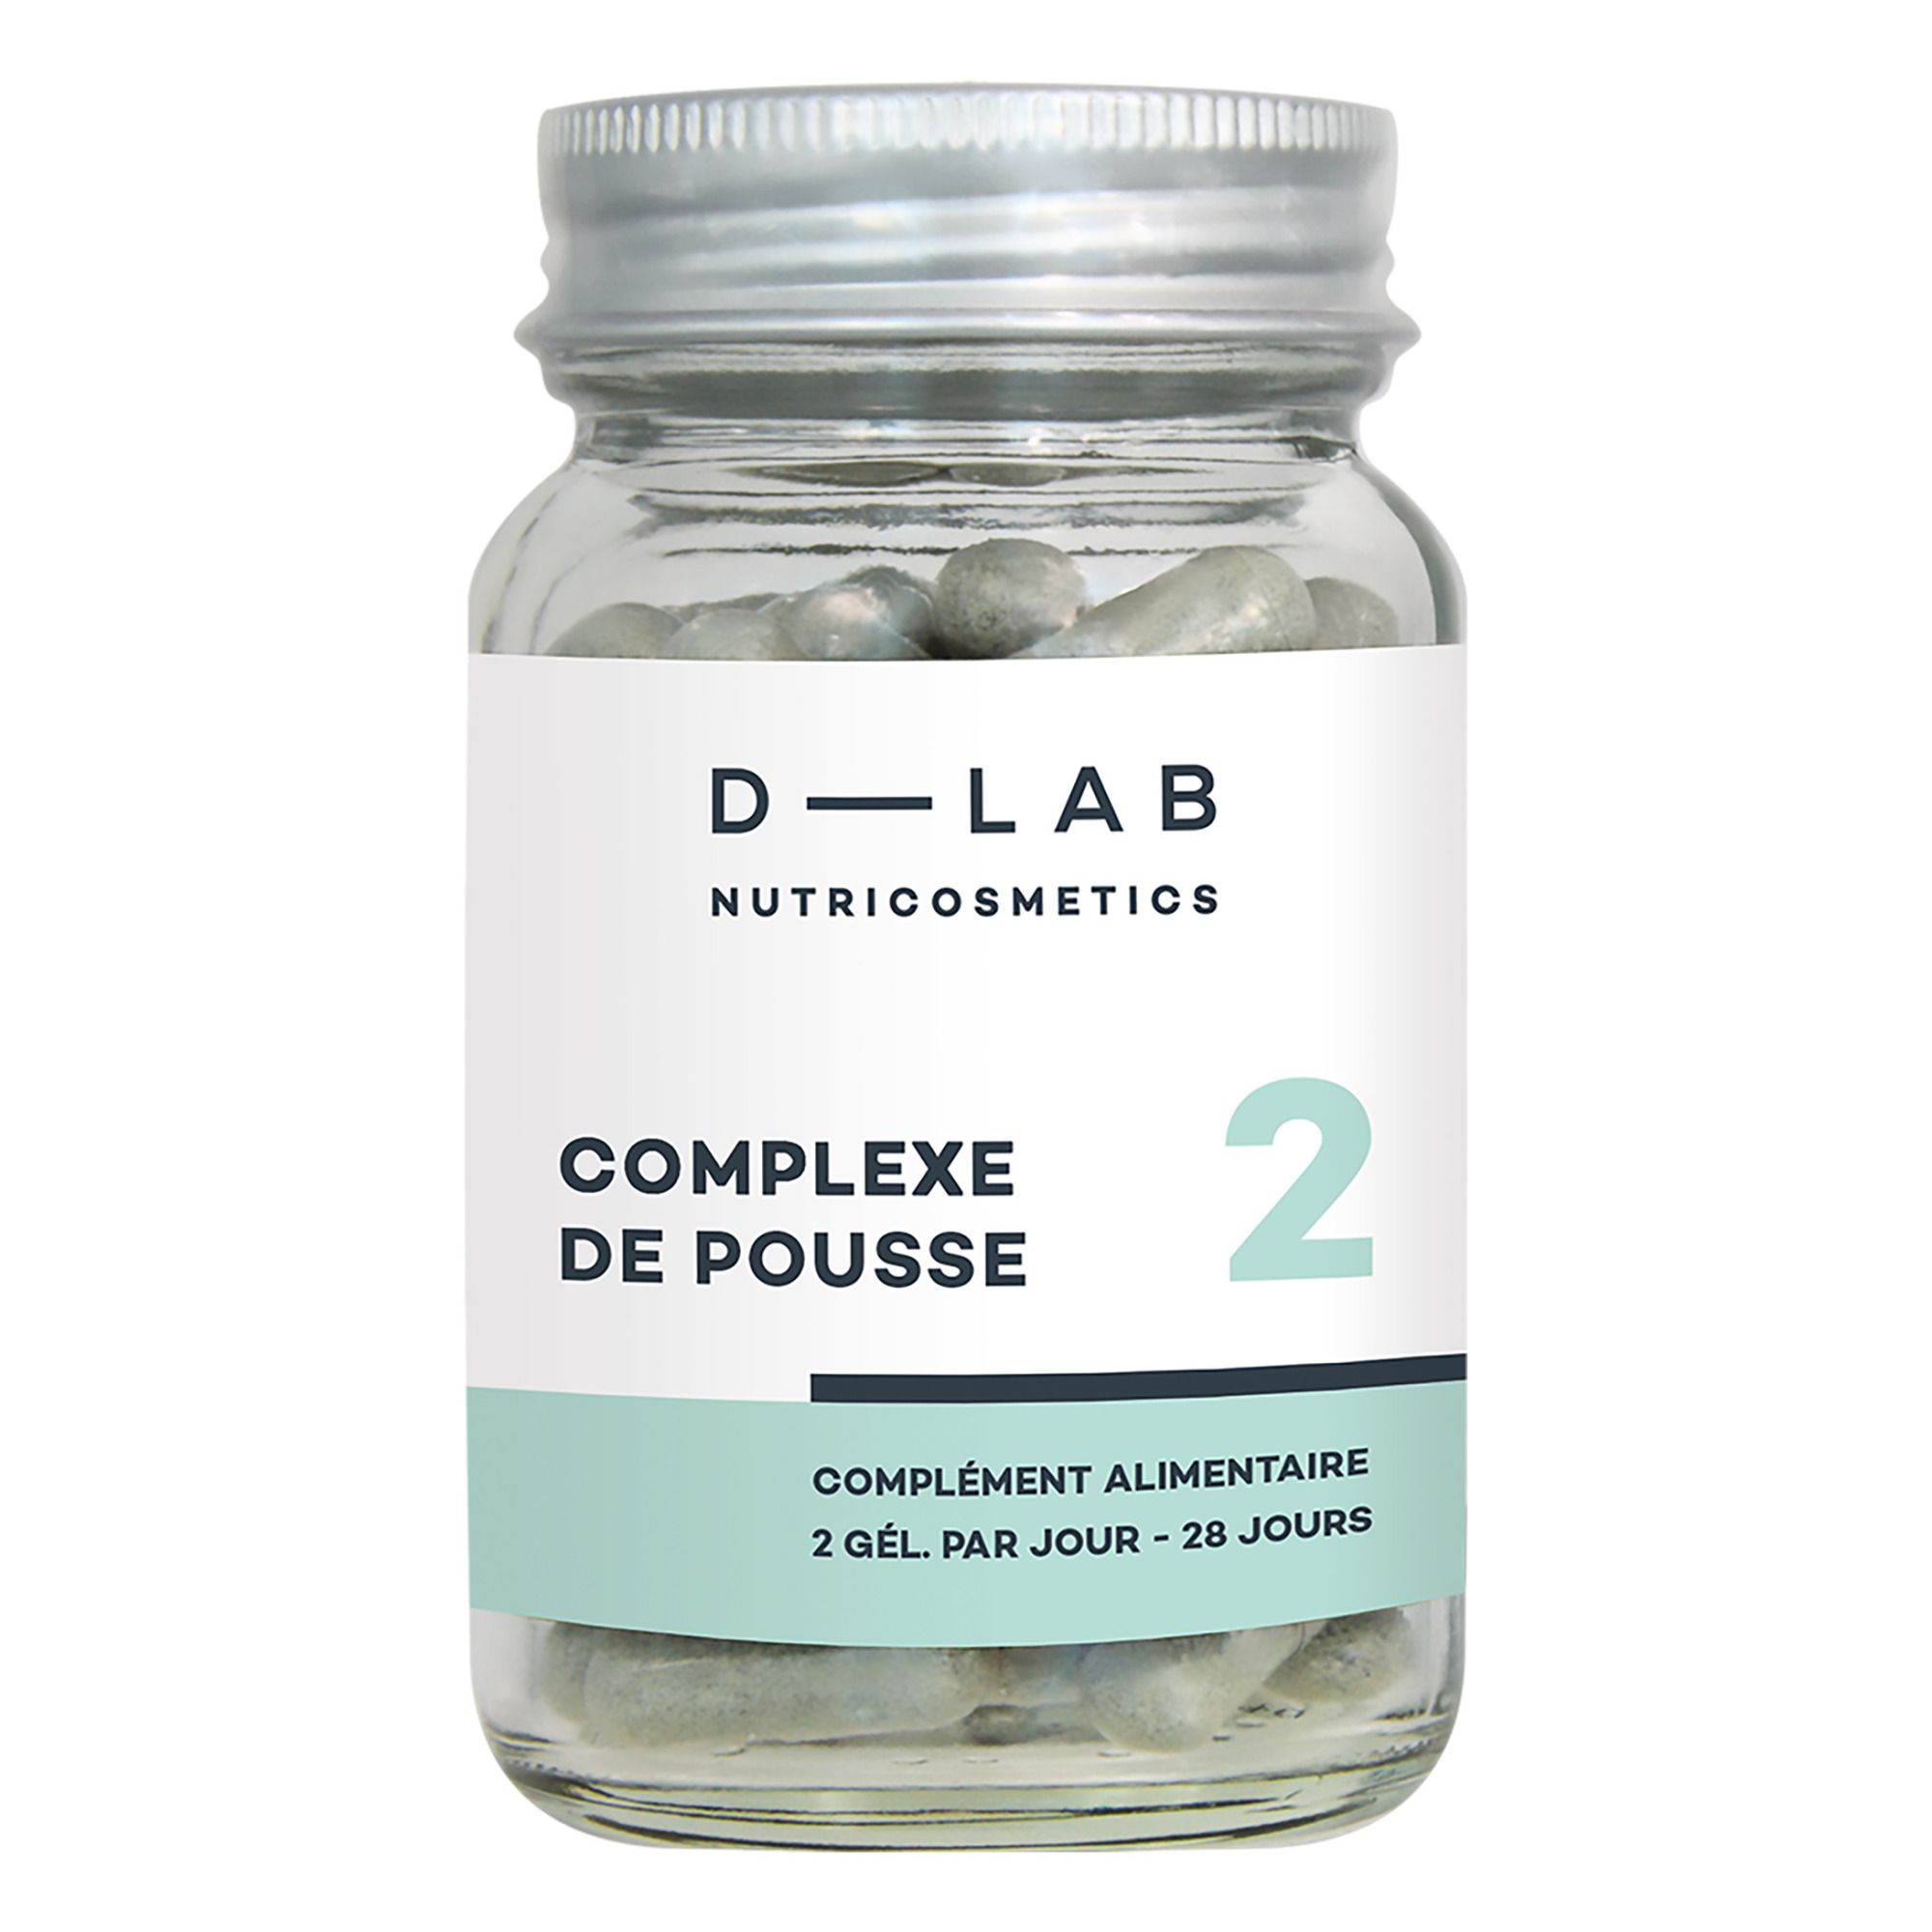 D-LAB NUTRICOSMETICS - Complexe de Pousse Complément alimentaire - 1 mois